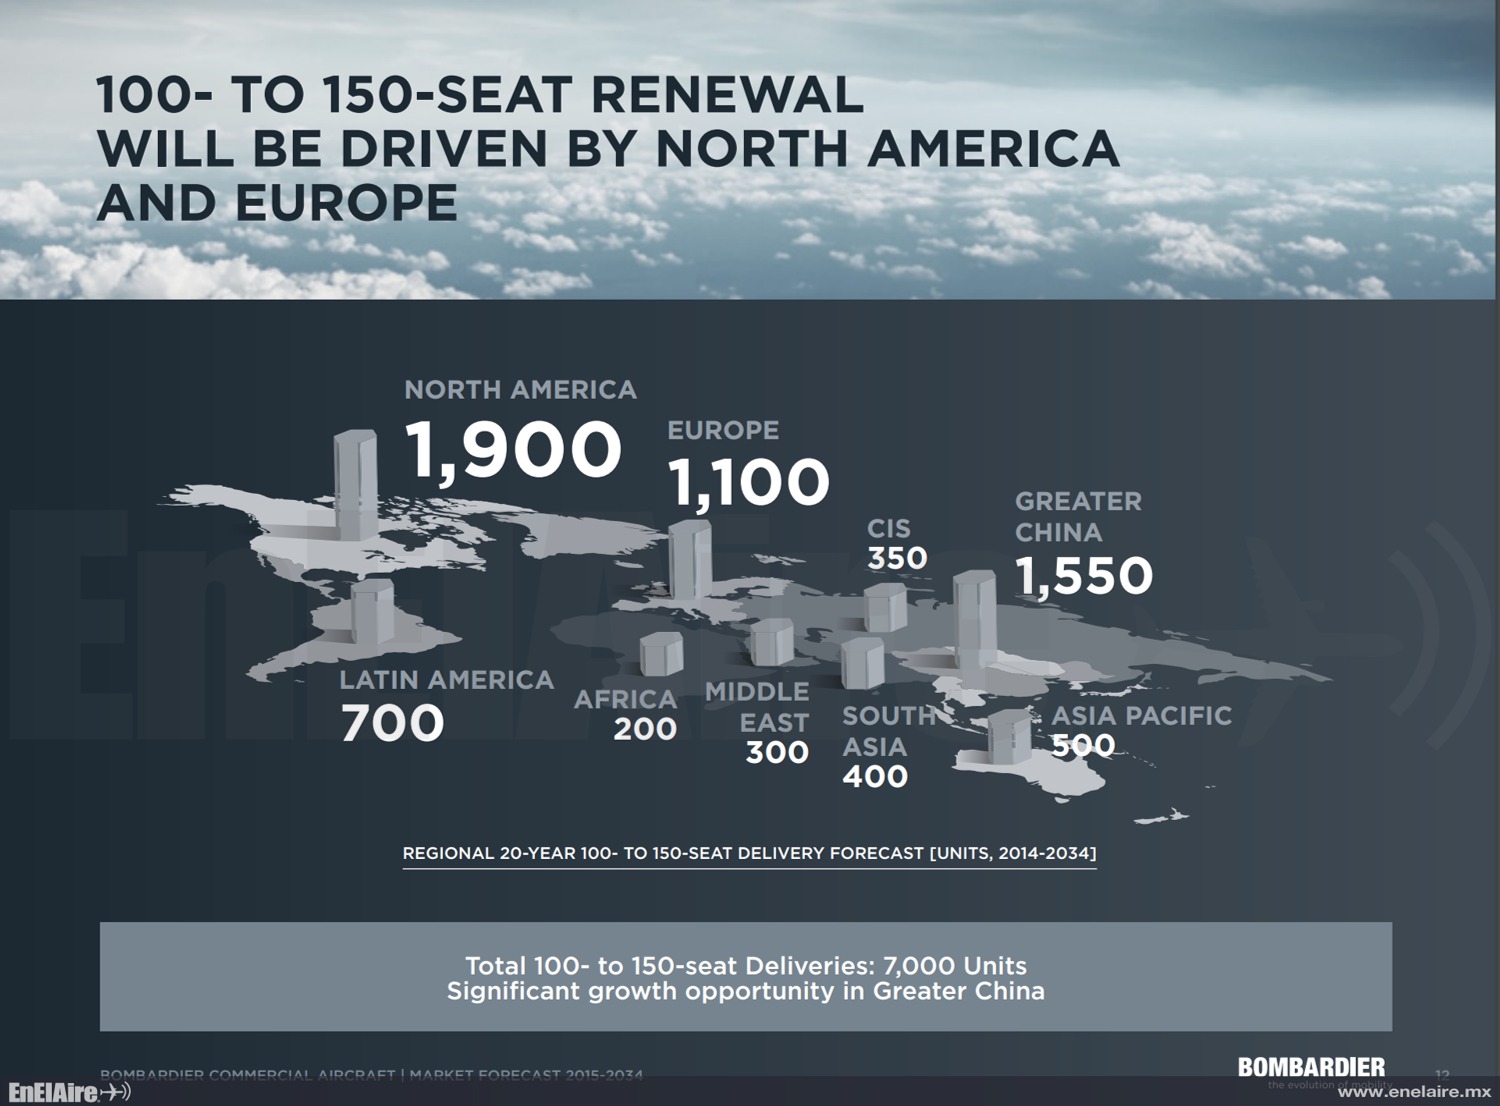 Bombardier prevé una demanda de 7000 mil aviones de 100 a 150 plazas en 20 años en el mundo.